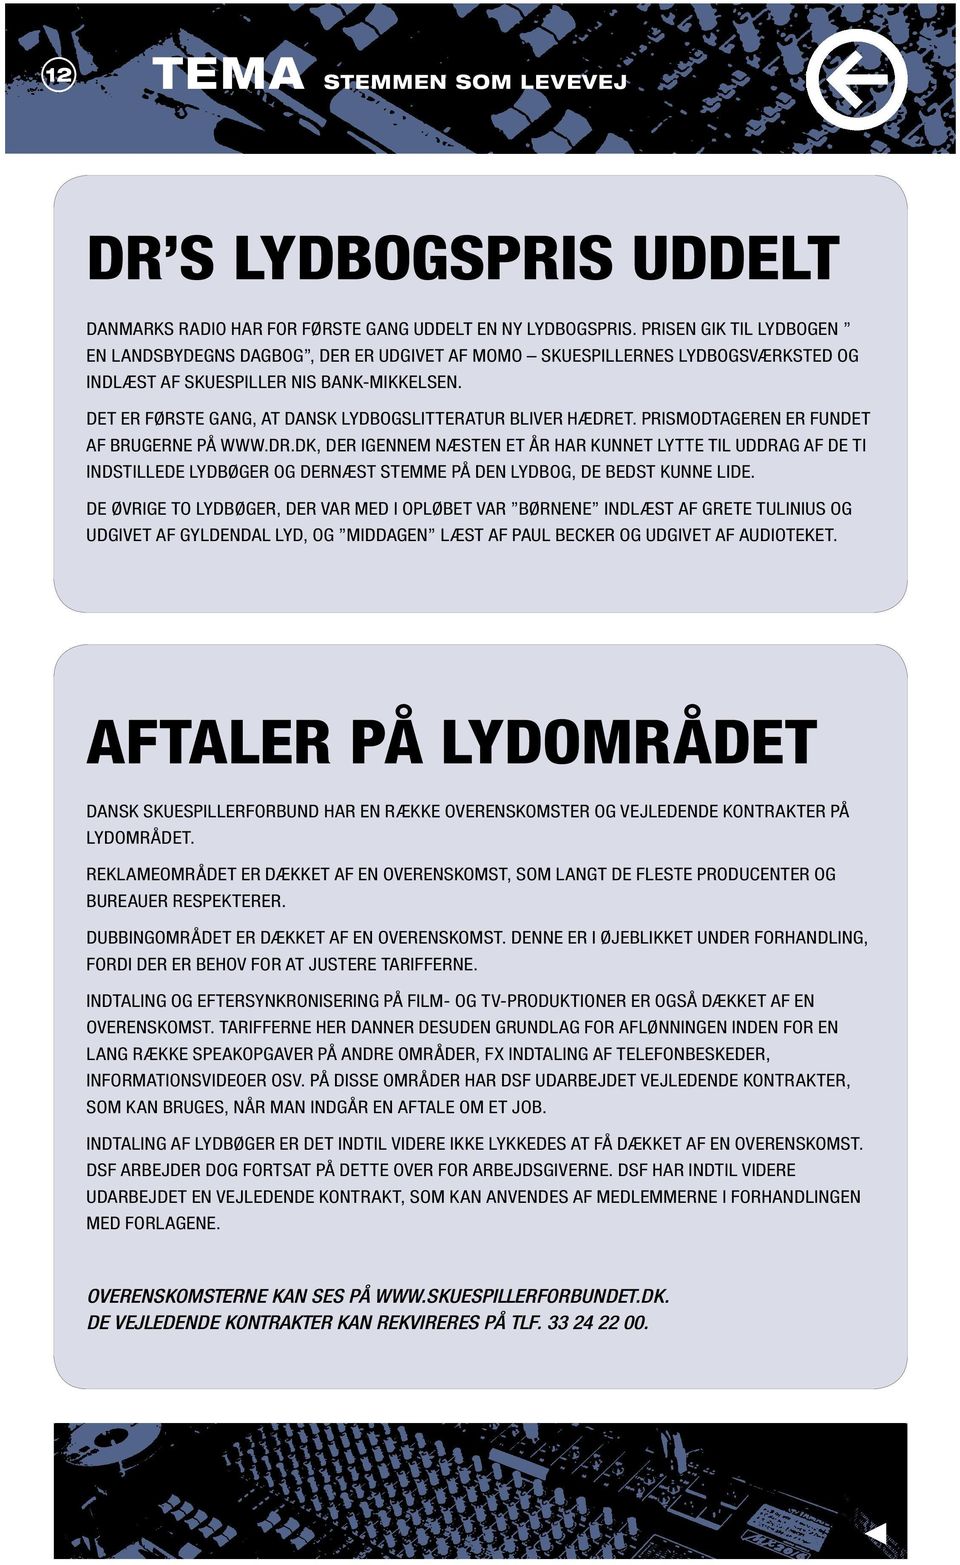 Det er første gang, at dansk lydbogslitteratur bliver hædret. Prismodtageren er fundet af brugerne på www.dr.dk, der igennem næsten et år har kunnet lytte til uddrag af de ti indstillede lydbøger og dernæst stemme på den lydbog, de bedst kunne lide.